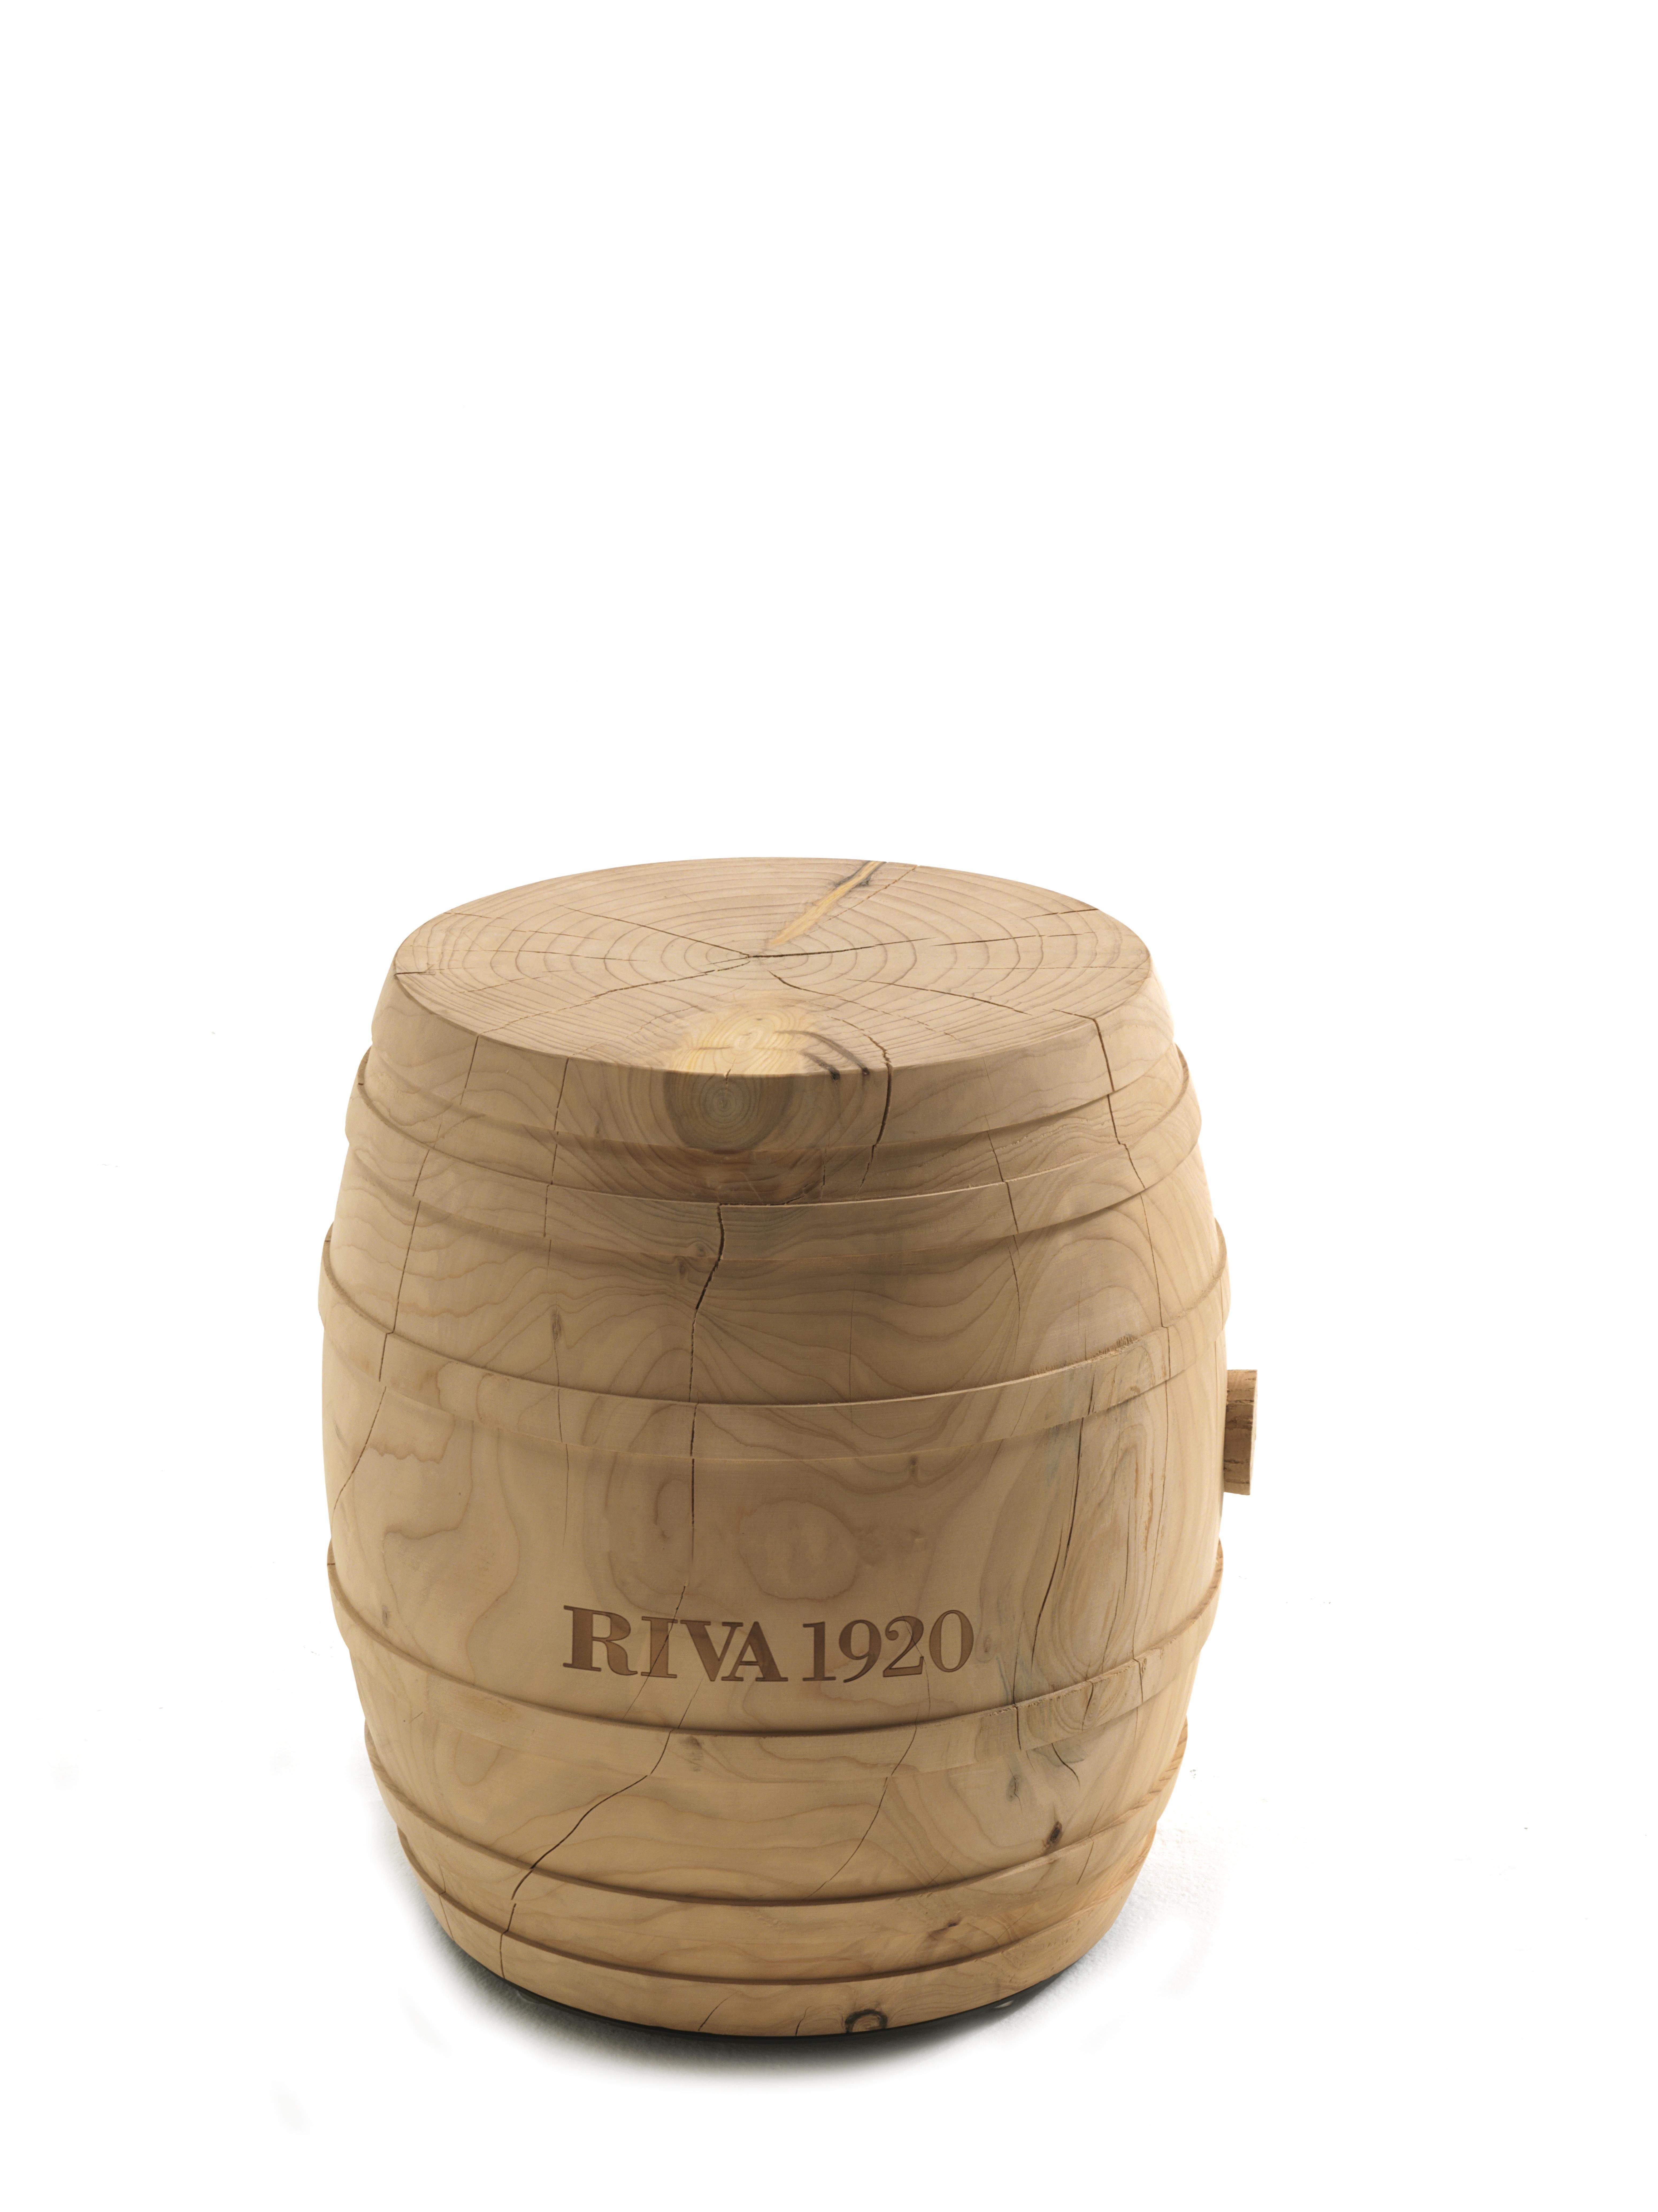 Tabouret Botte C.R.&S. Riva1920 en cèdre naturel contemporain fabriqué en Italie Riva1920